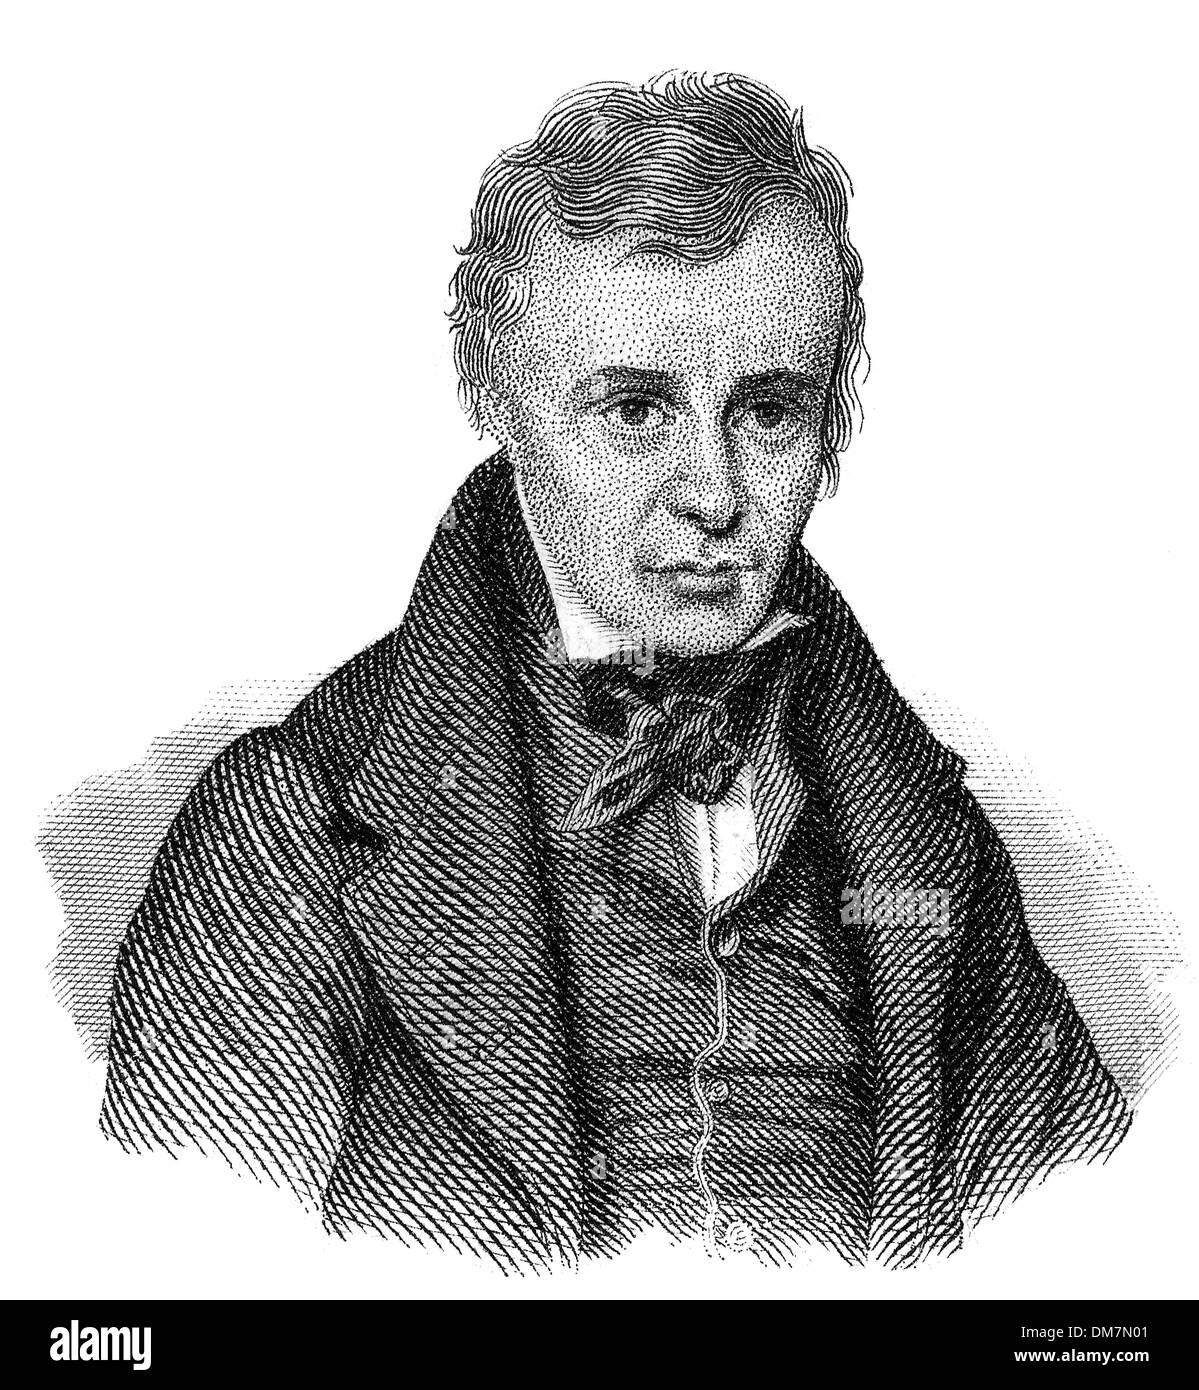 Hugues-Félicité Robert de Lamennais or de la Mennais, 1782 - 1854, French priest, philosopher and political theorist, Stock Photo